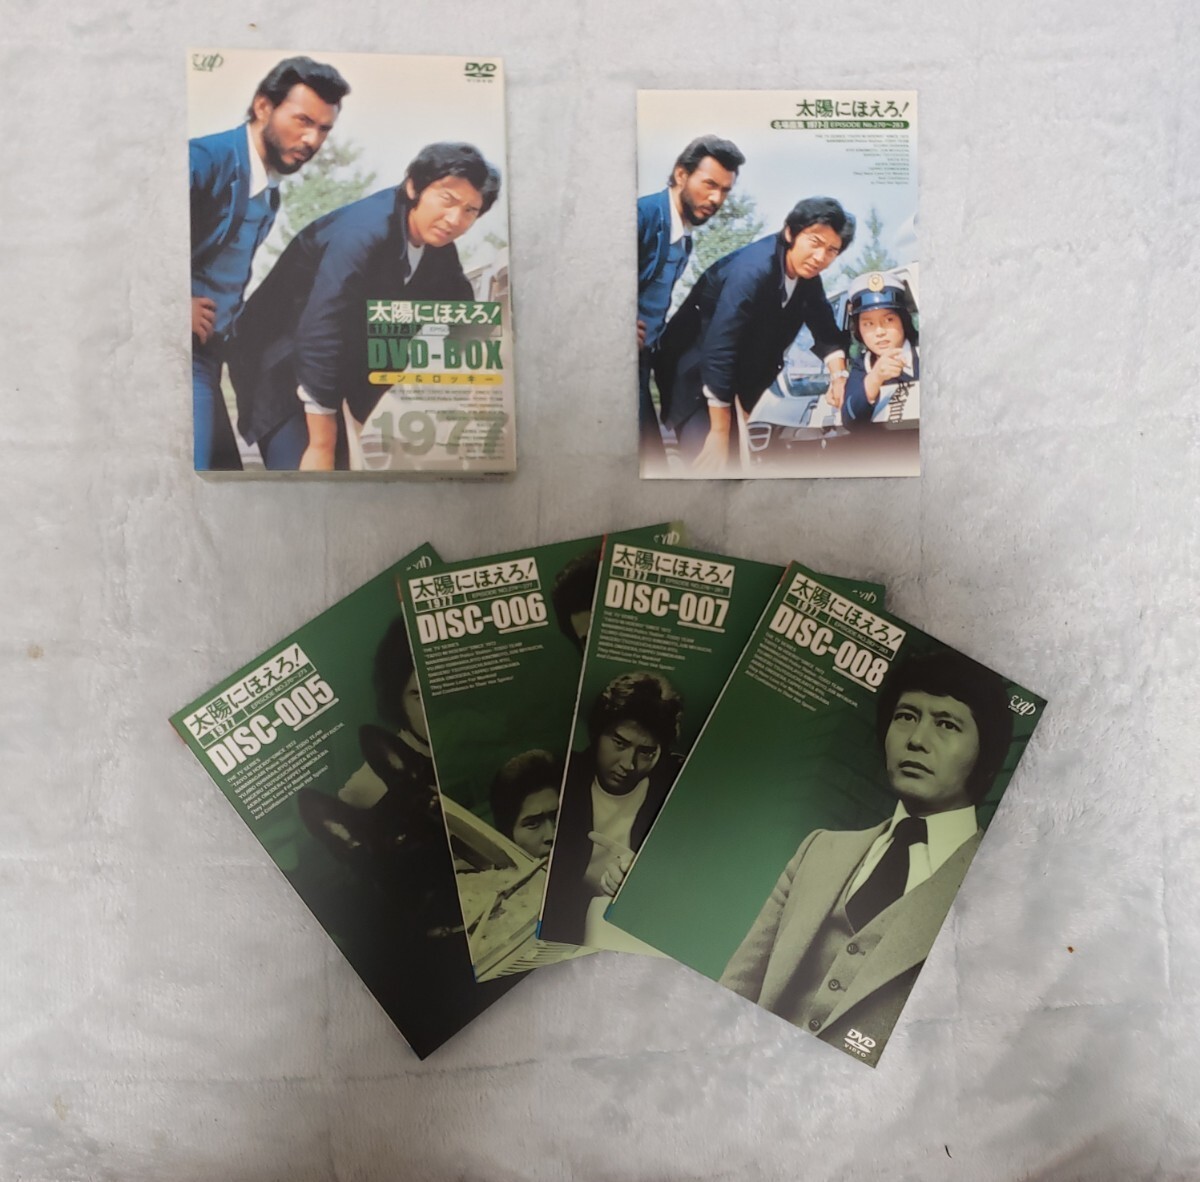 太陽にほえろ! 1977 DVD-BOX 2 ボン&ロッキー編 (初回限定生産)_画像5